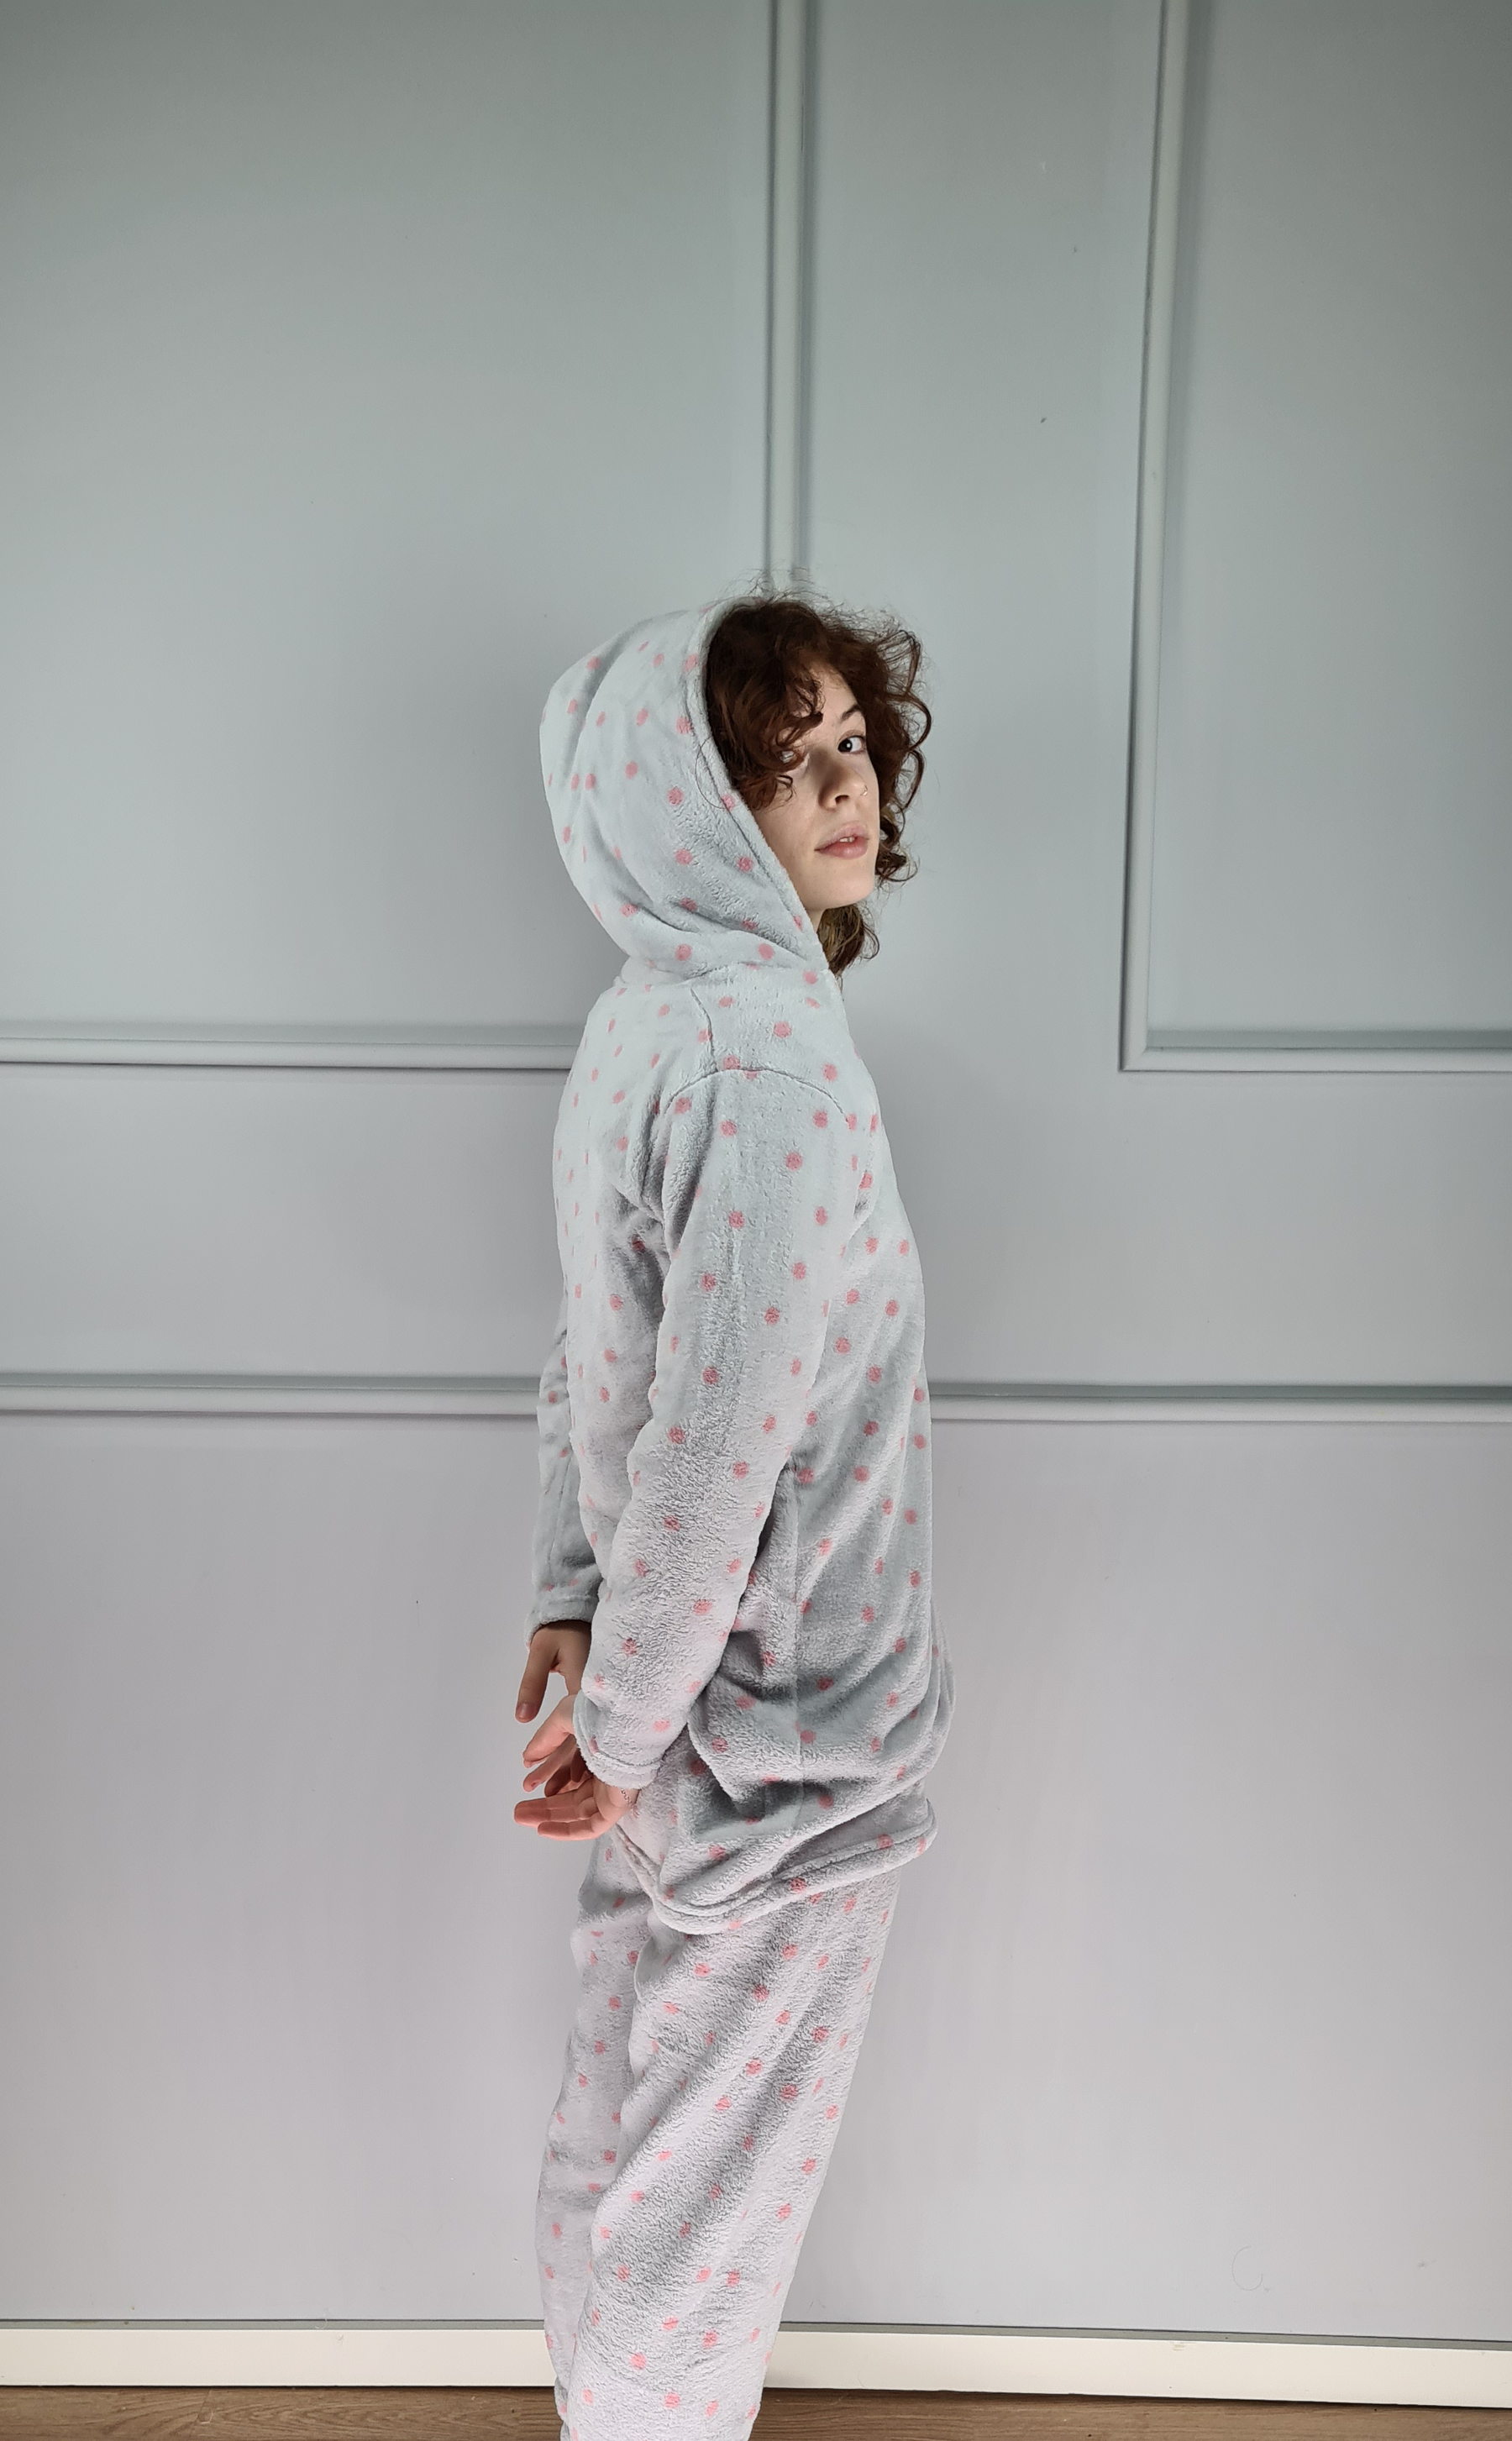 Conjunto Pijama e Robe/Camisa Polka Dots Polar